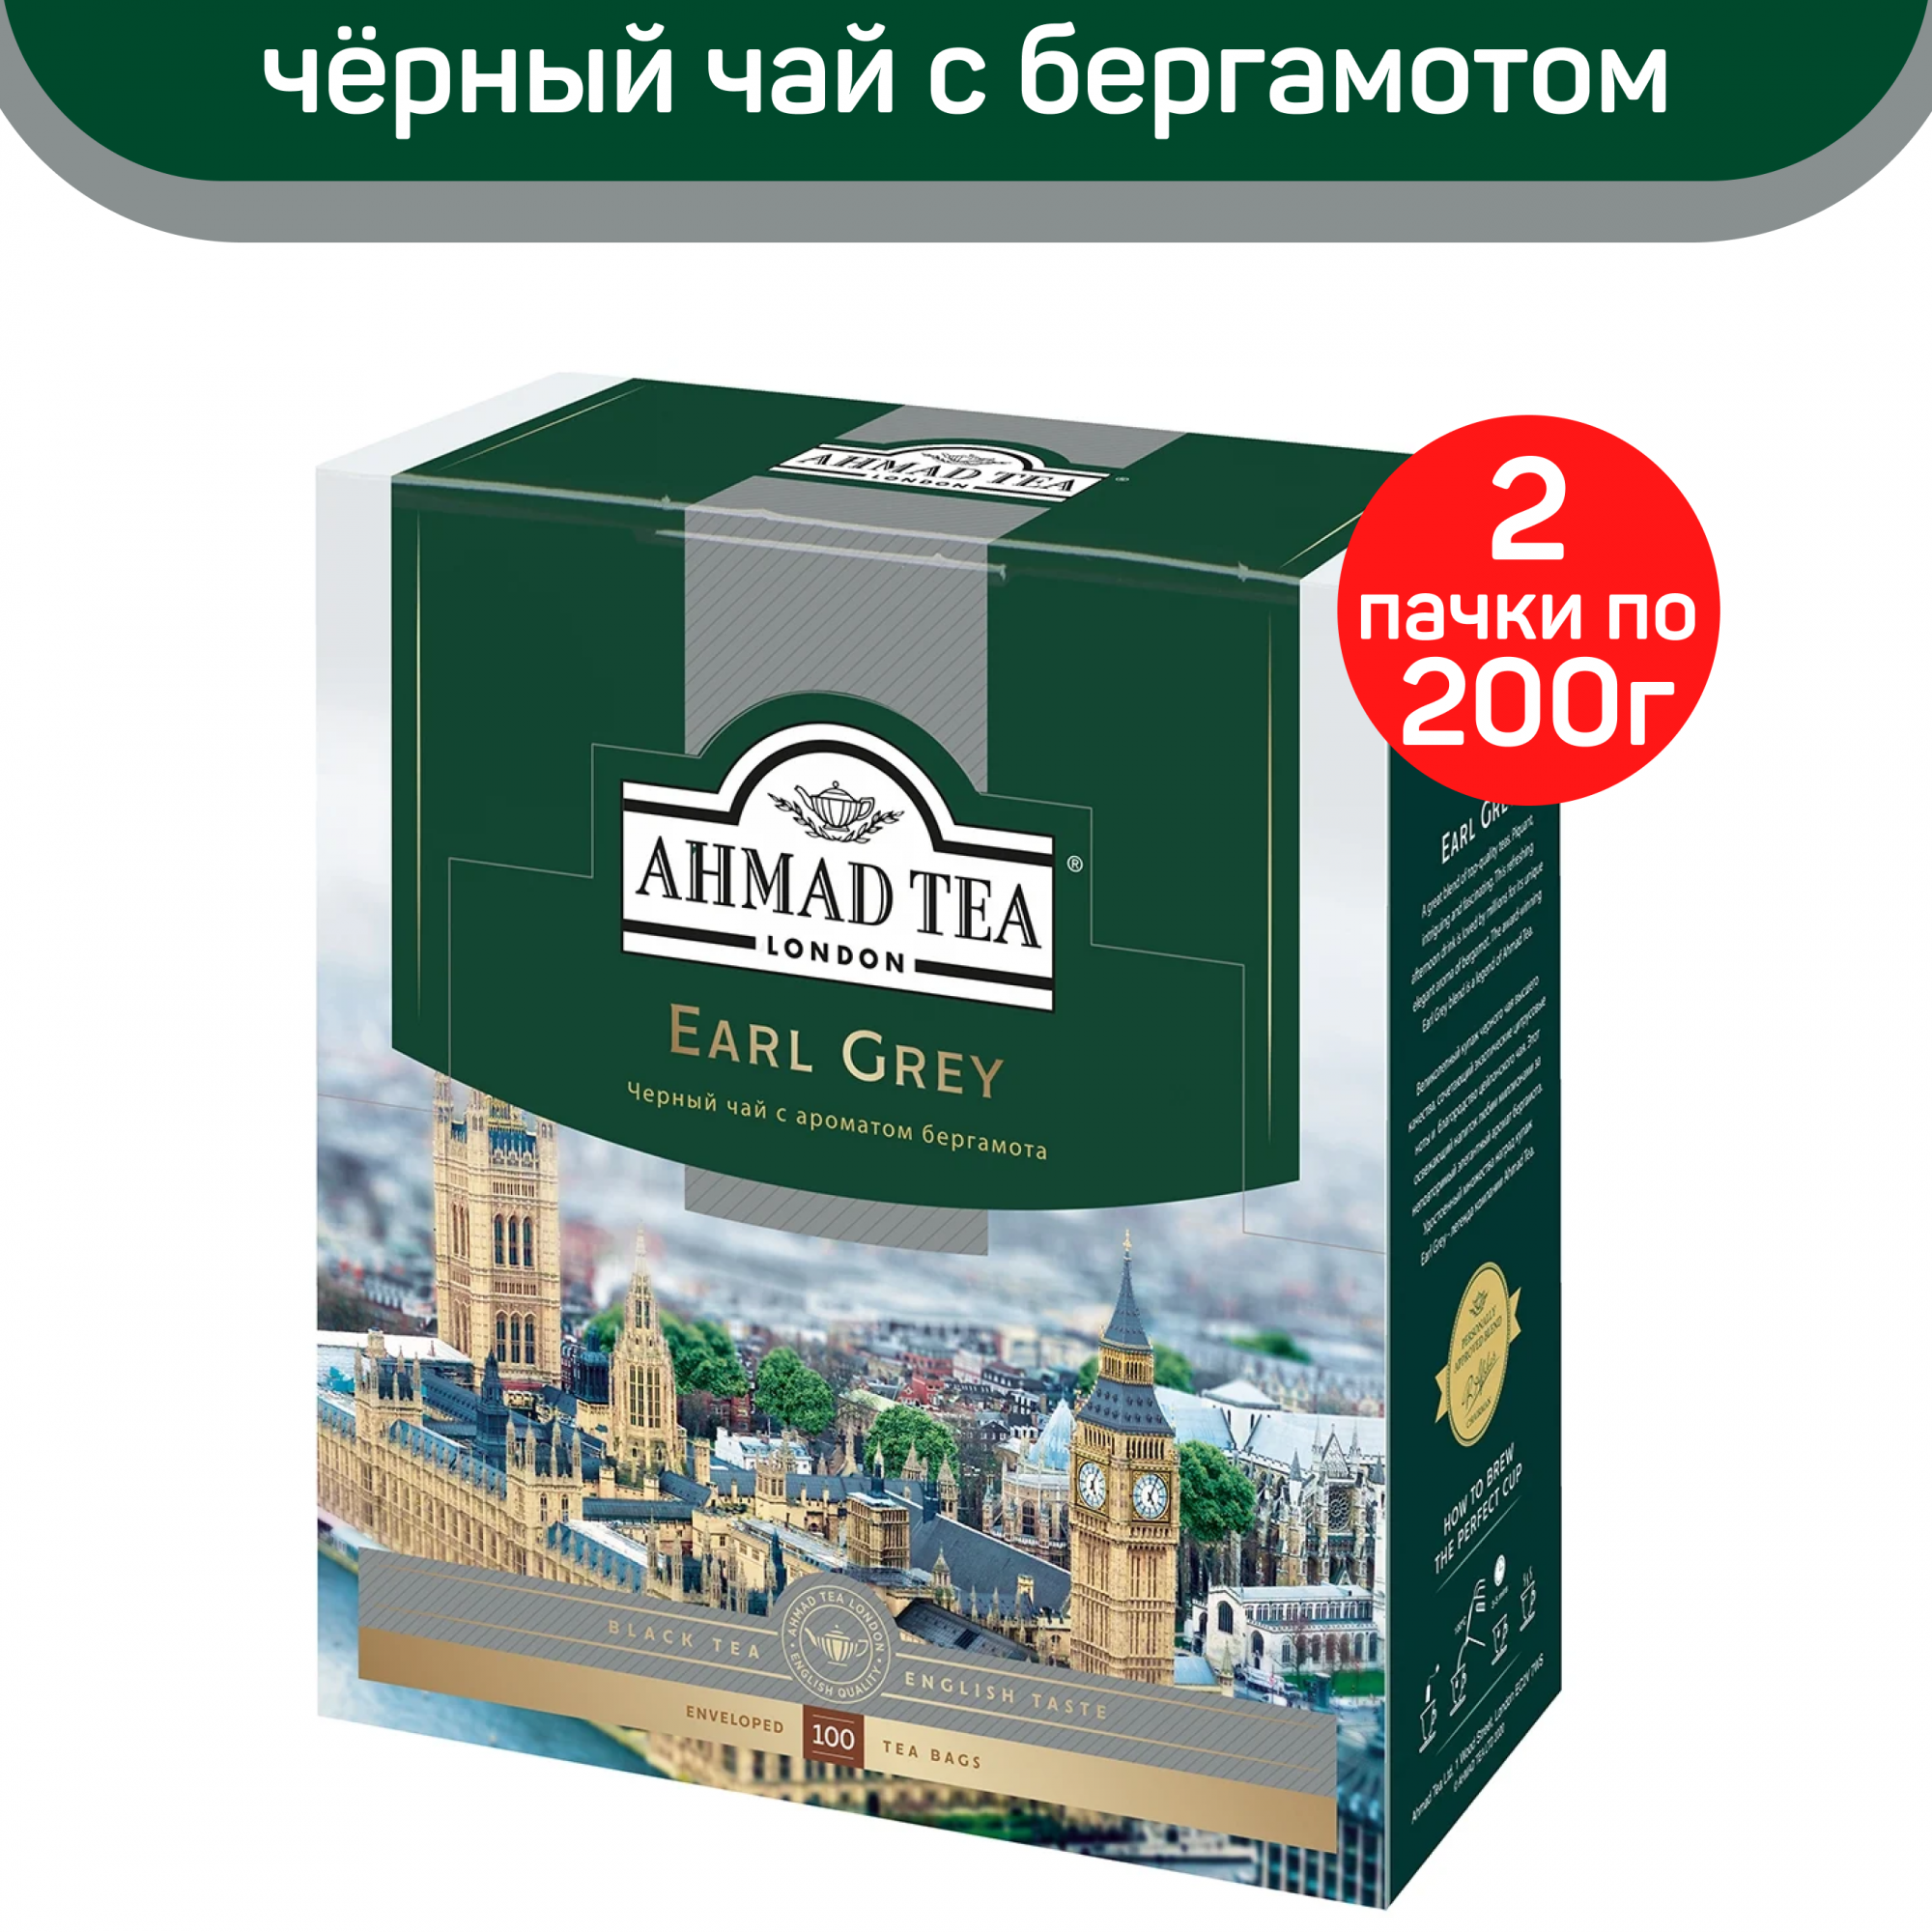 Купить чай черный Ahmad Earl Grey, с ароматом бергамота, 2 шт по 100 пакетиков, цены на Мегамаркет | Артикул: 600012838022